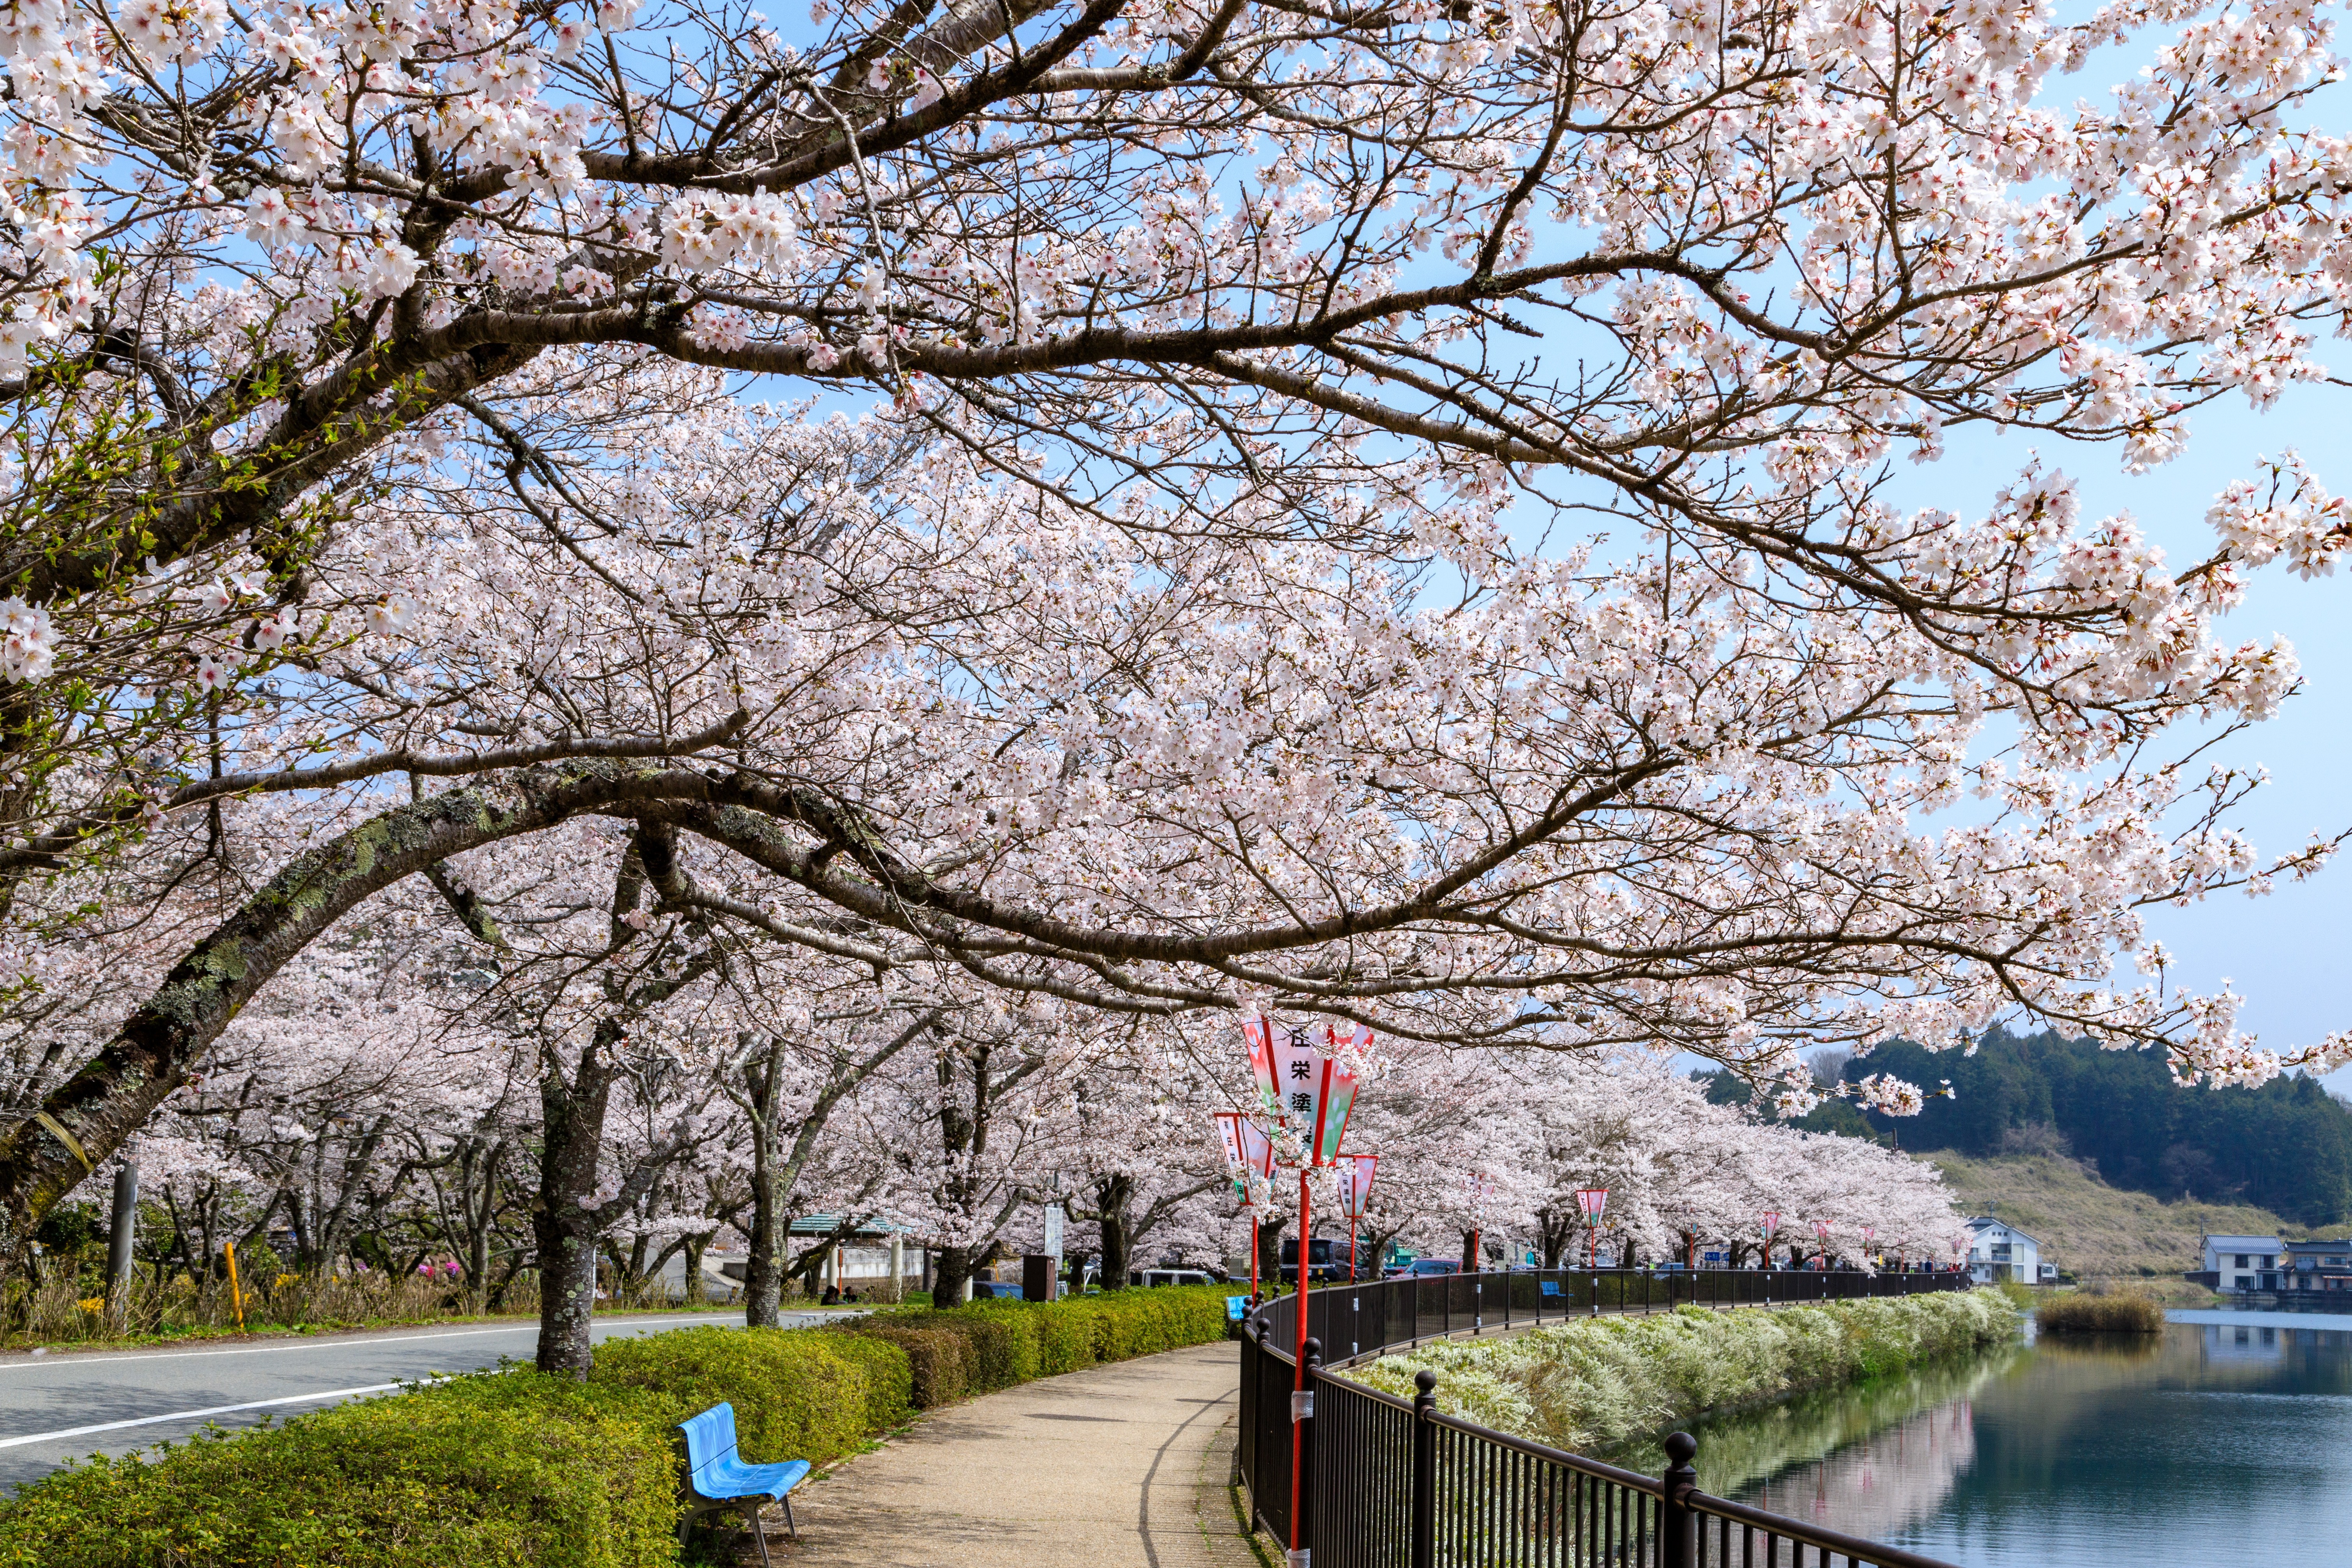 さくら名所100選にも選ばれた桜を見れます